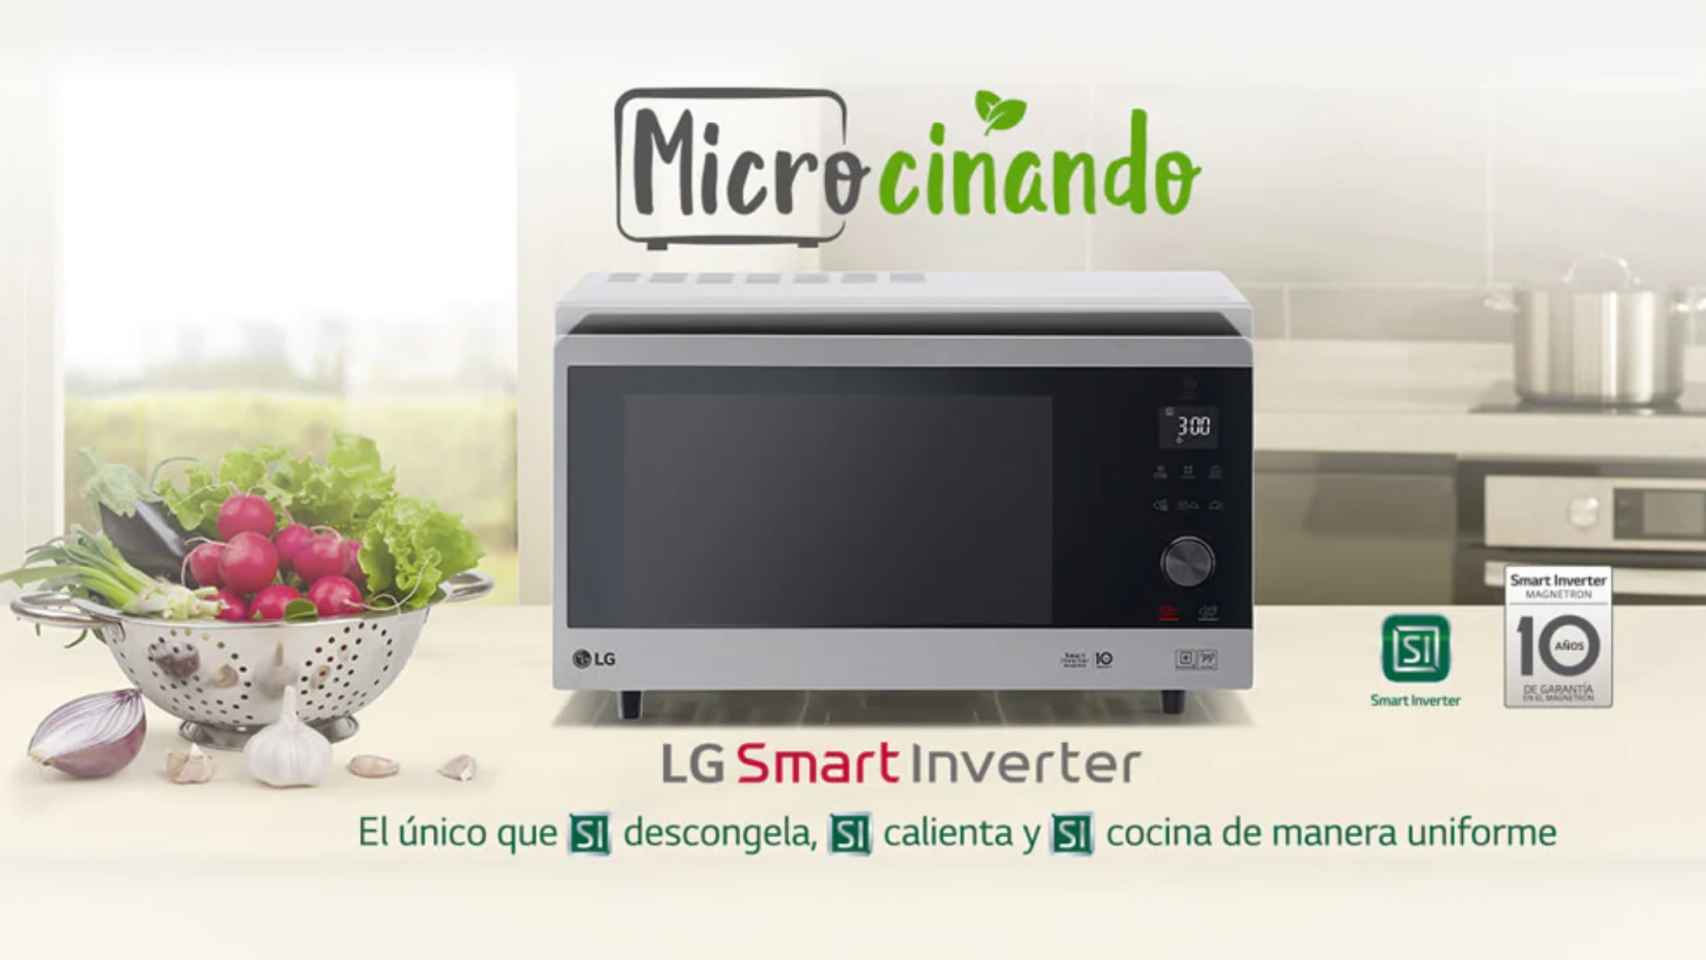 Tu microondas LG Smart Inverter hace por ti más de lo que imaginas! Cocina  una variedad de platos con la temperatura adecuada y disfruta de comidas